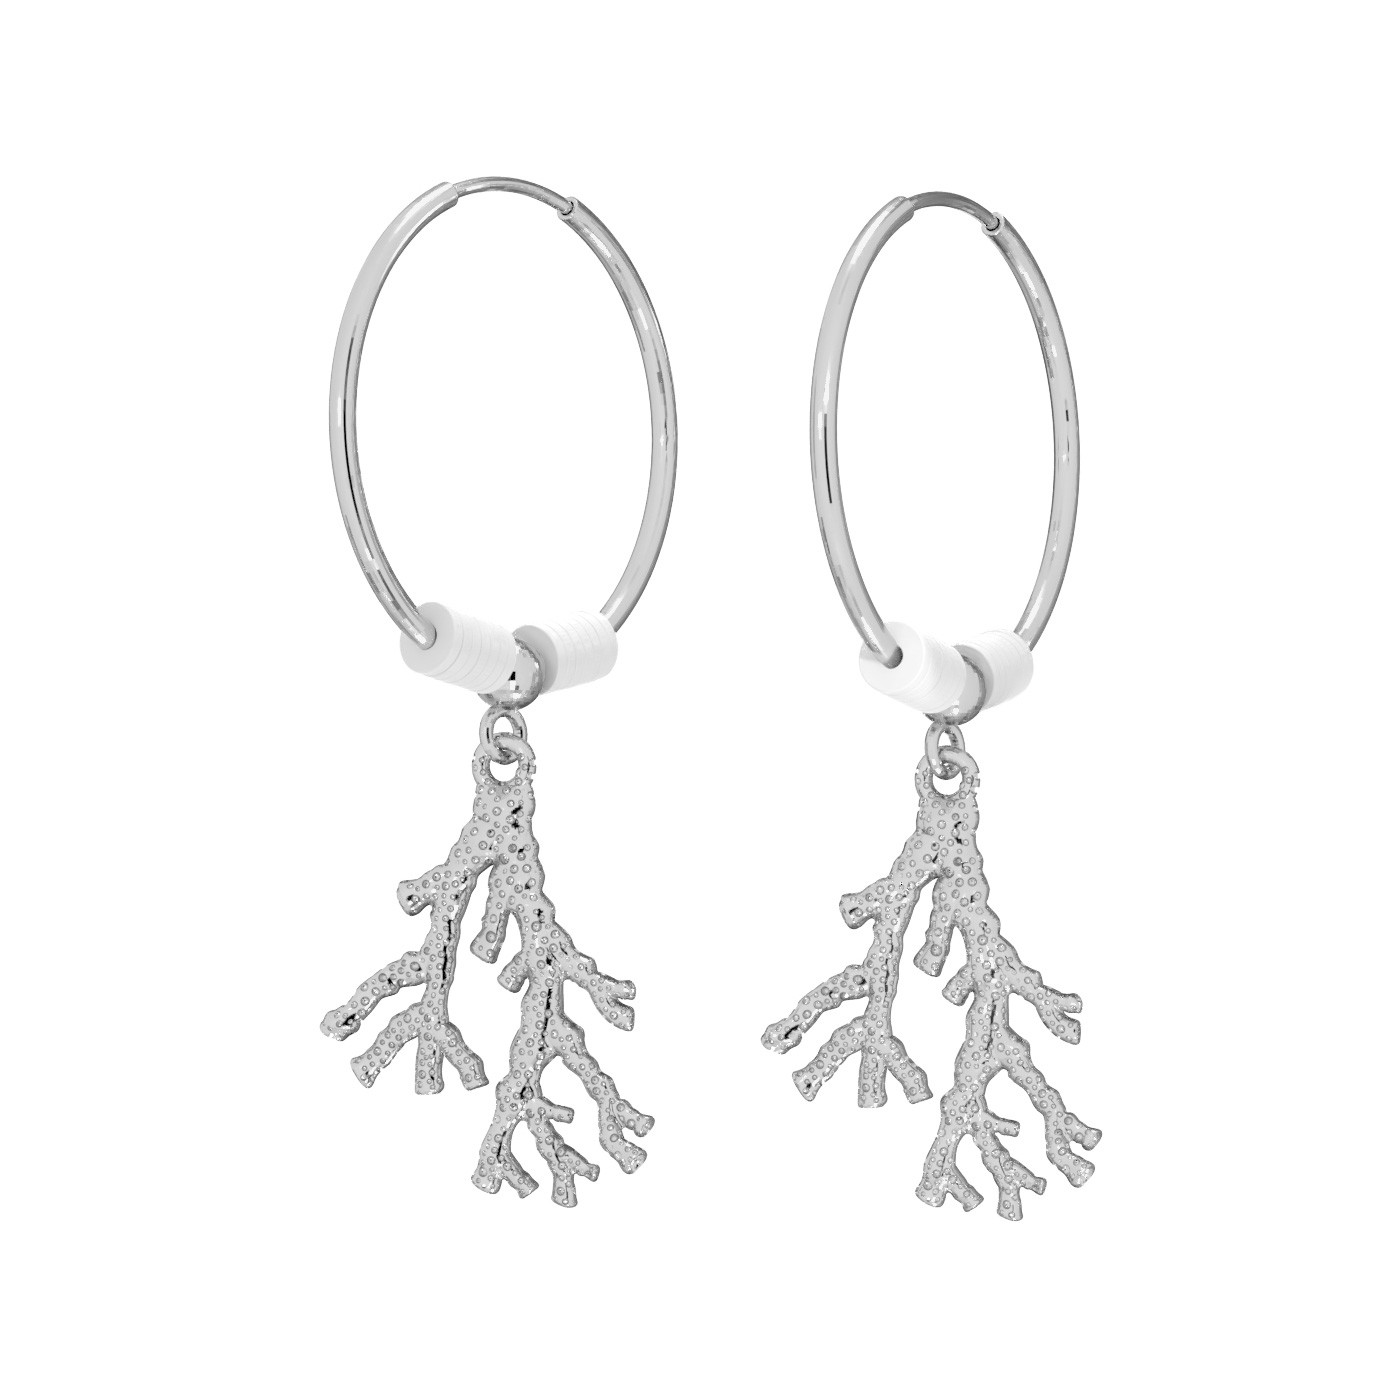 Coral hoop earring, T°ra'vel'' sterling silver 925